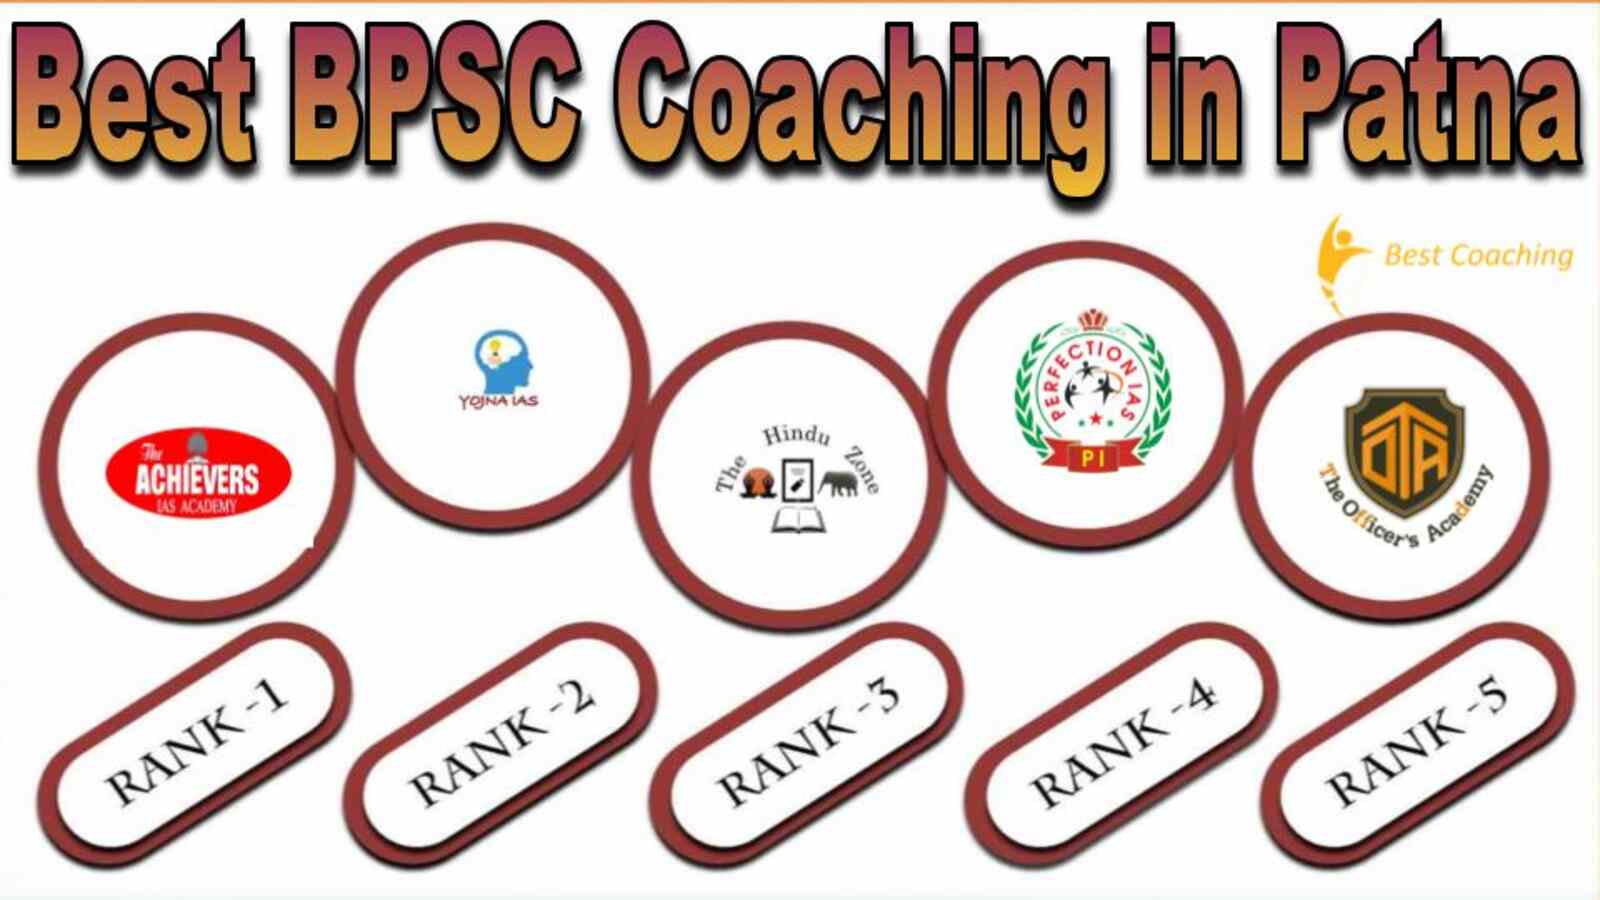 Best BPSC Coaching Institute in Patna